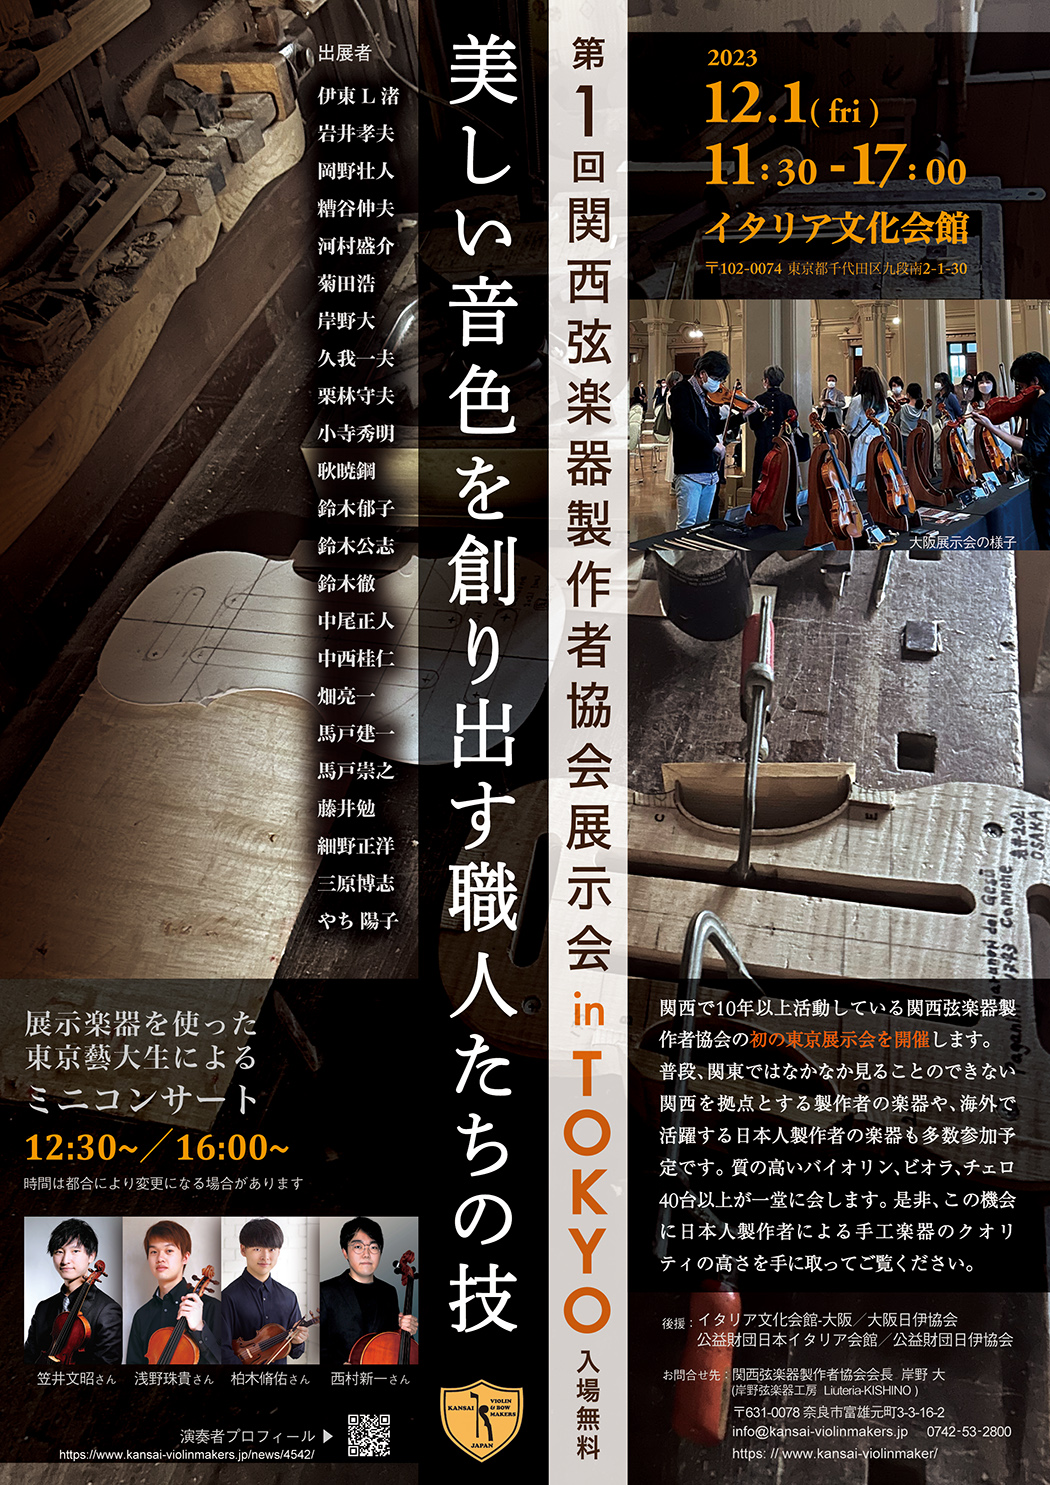 関西弦楽器製作者協会展示会 in TOKYO